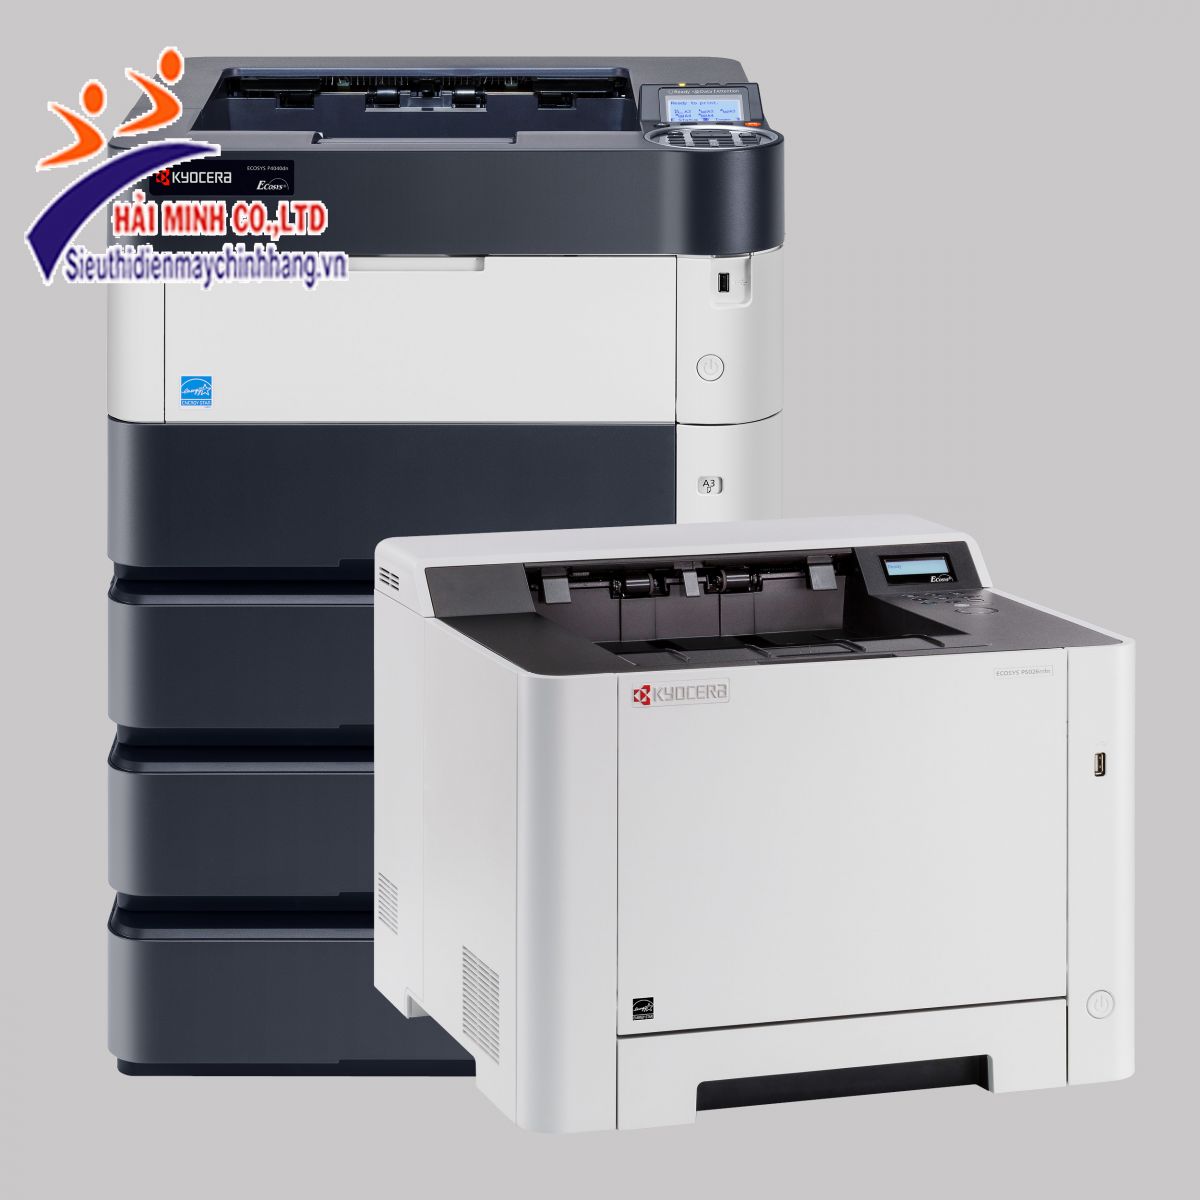 Nên chọn máy photocopy giá rẻ như thế nào?